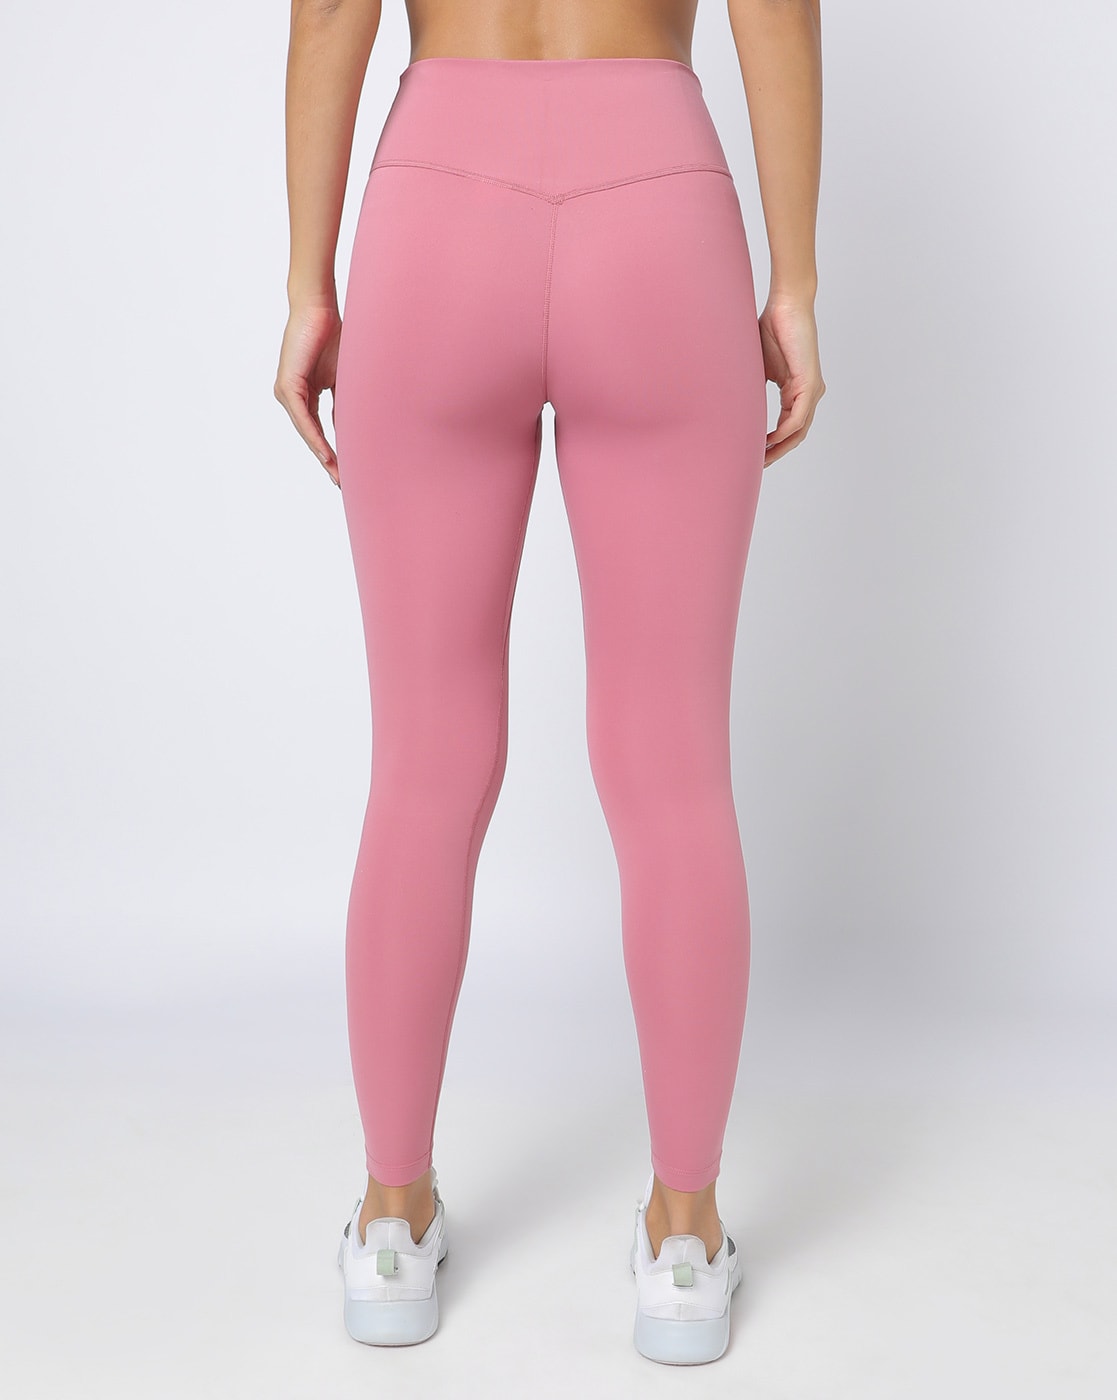 CMTD Pink Yoga Leggings – CMTD Committed App Clothing